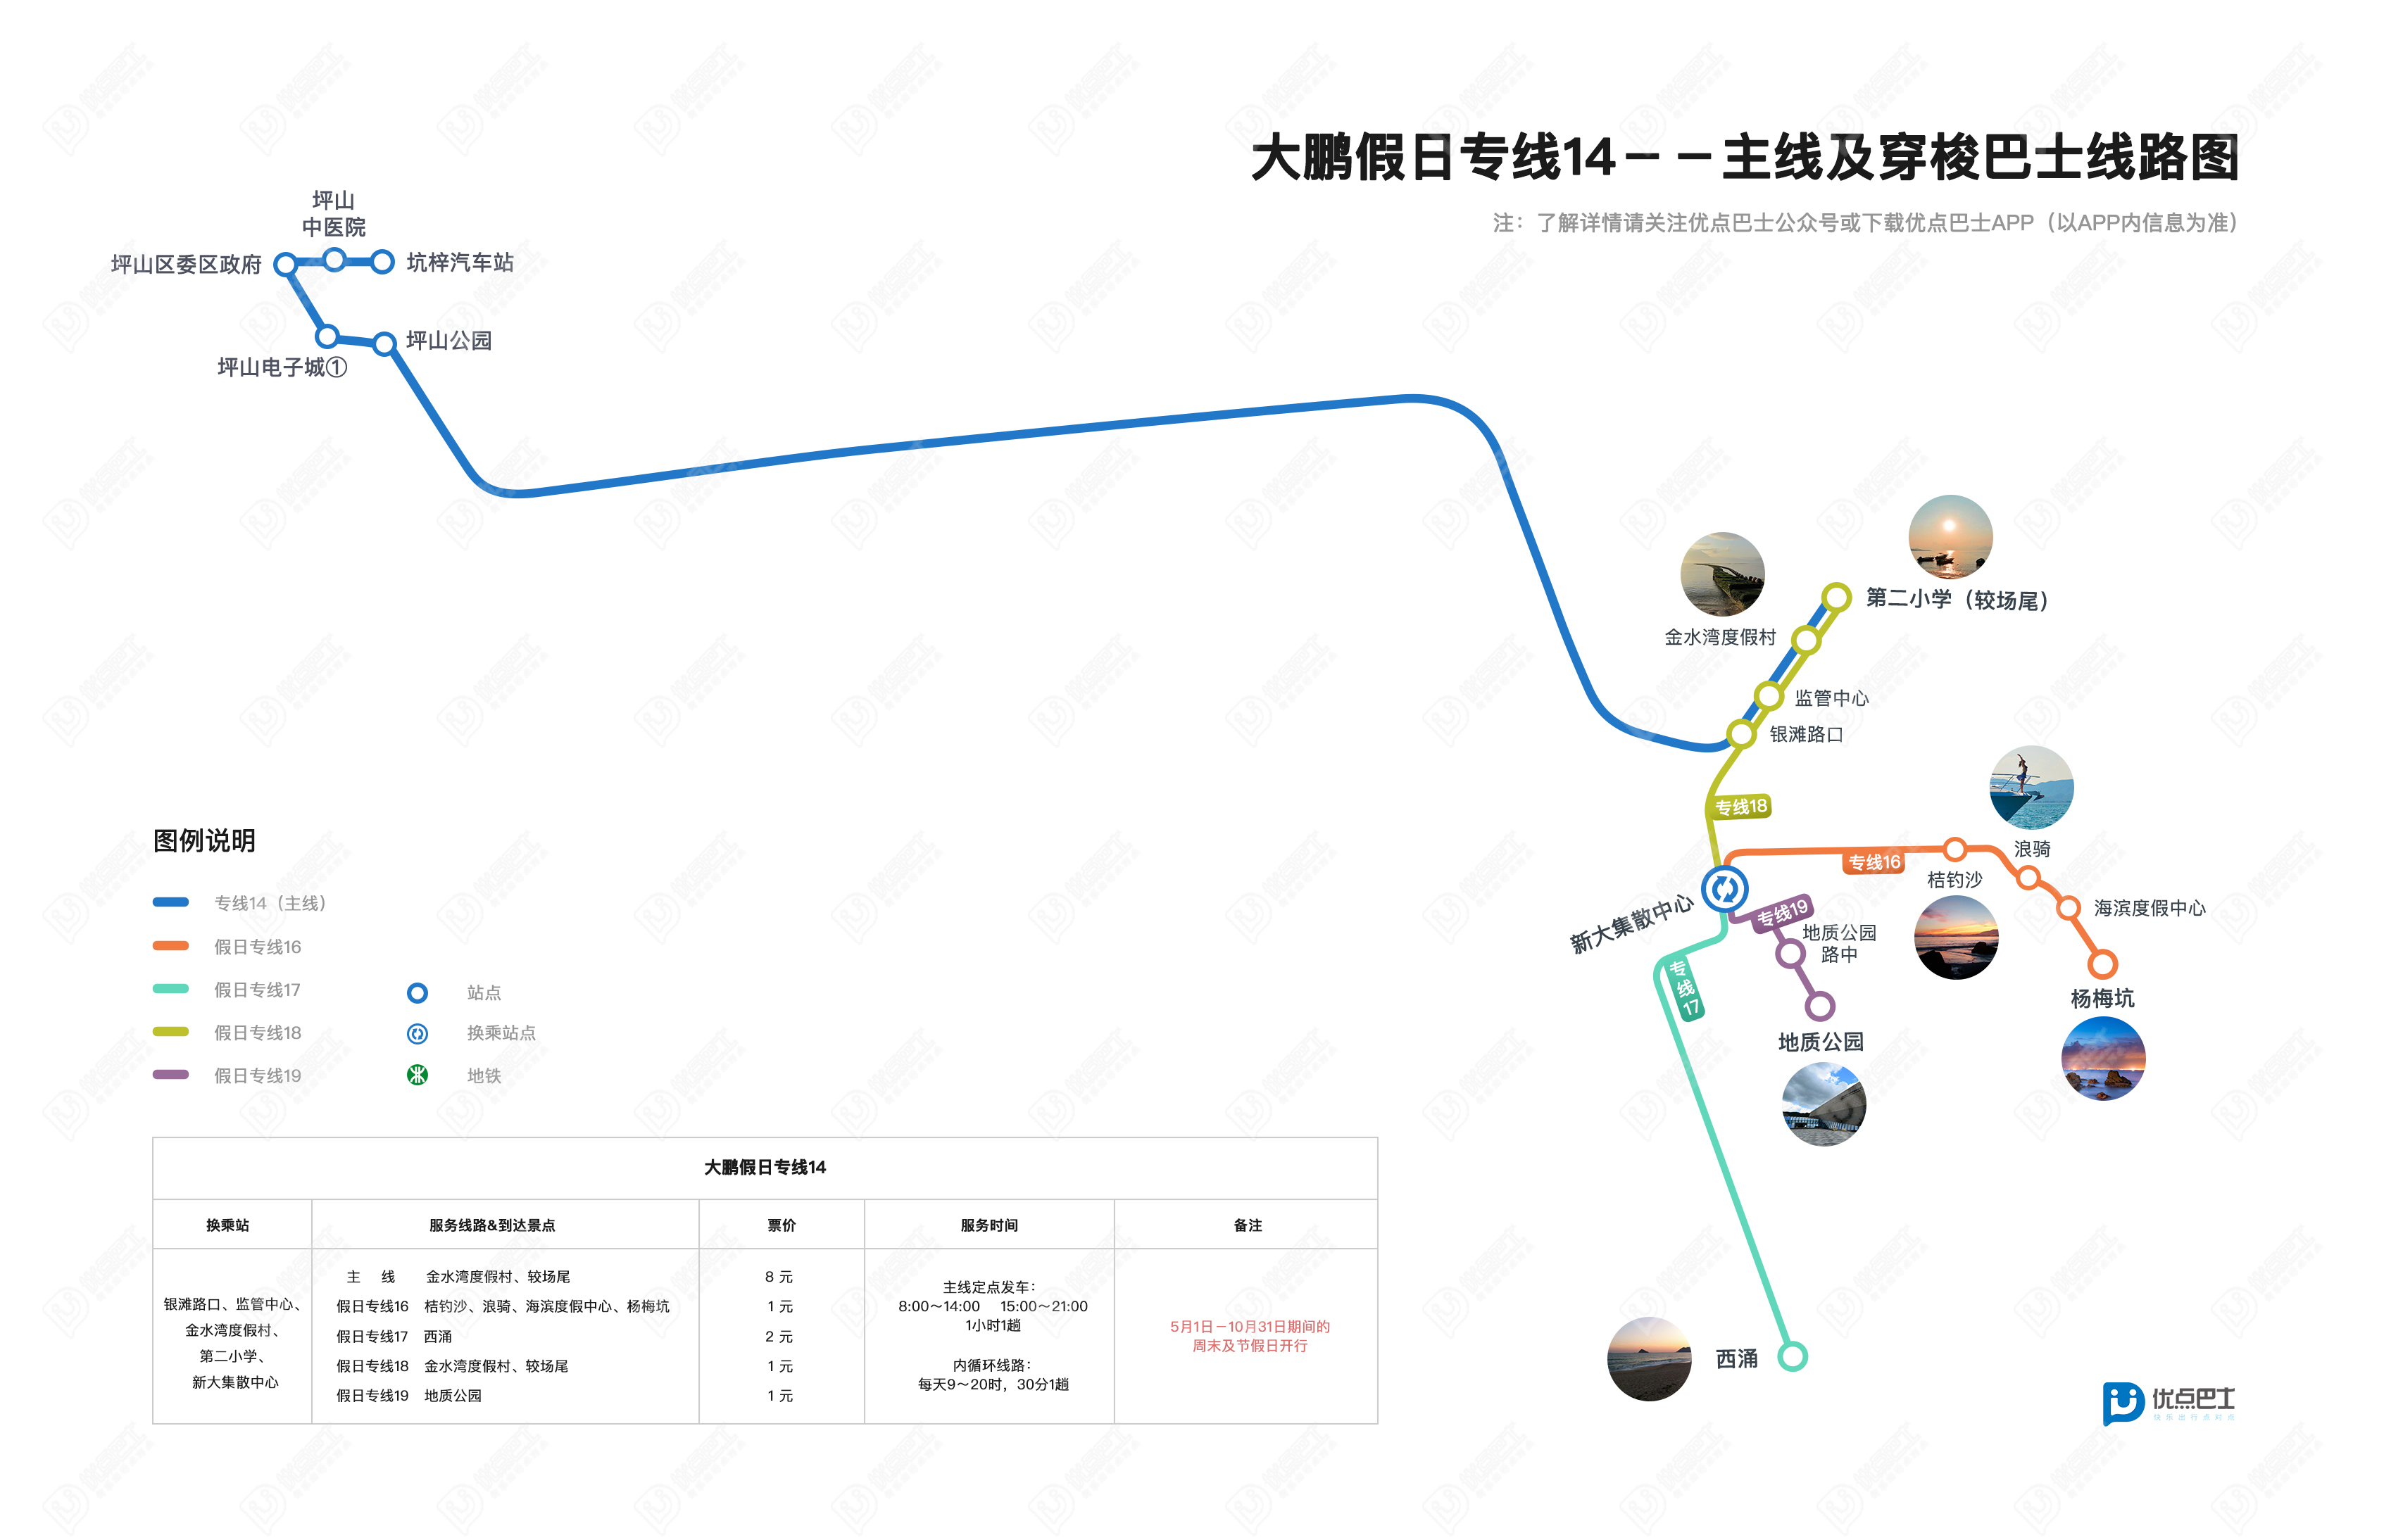 【深圳】M371线等9条公交线路调整